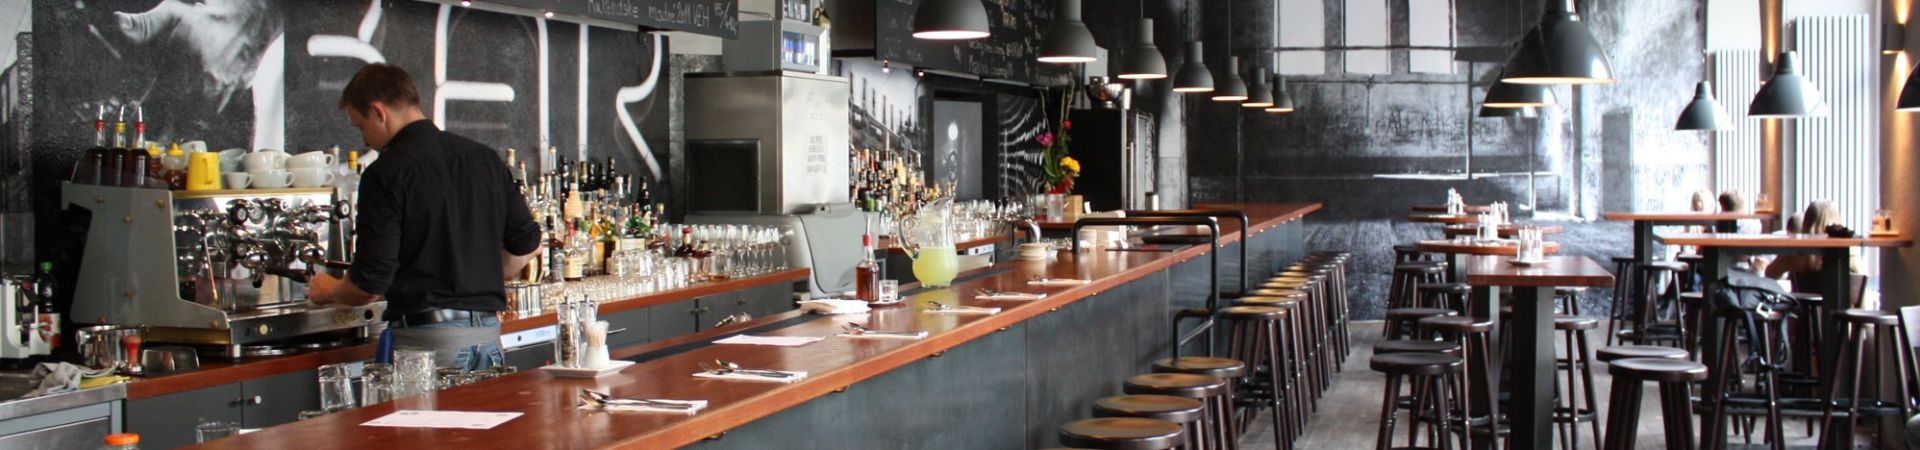 Hoffa Bar